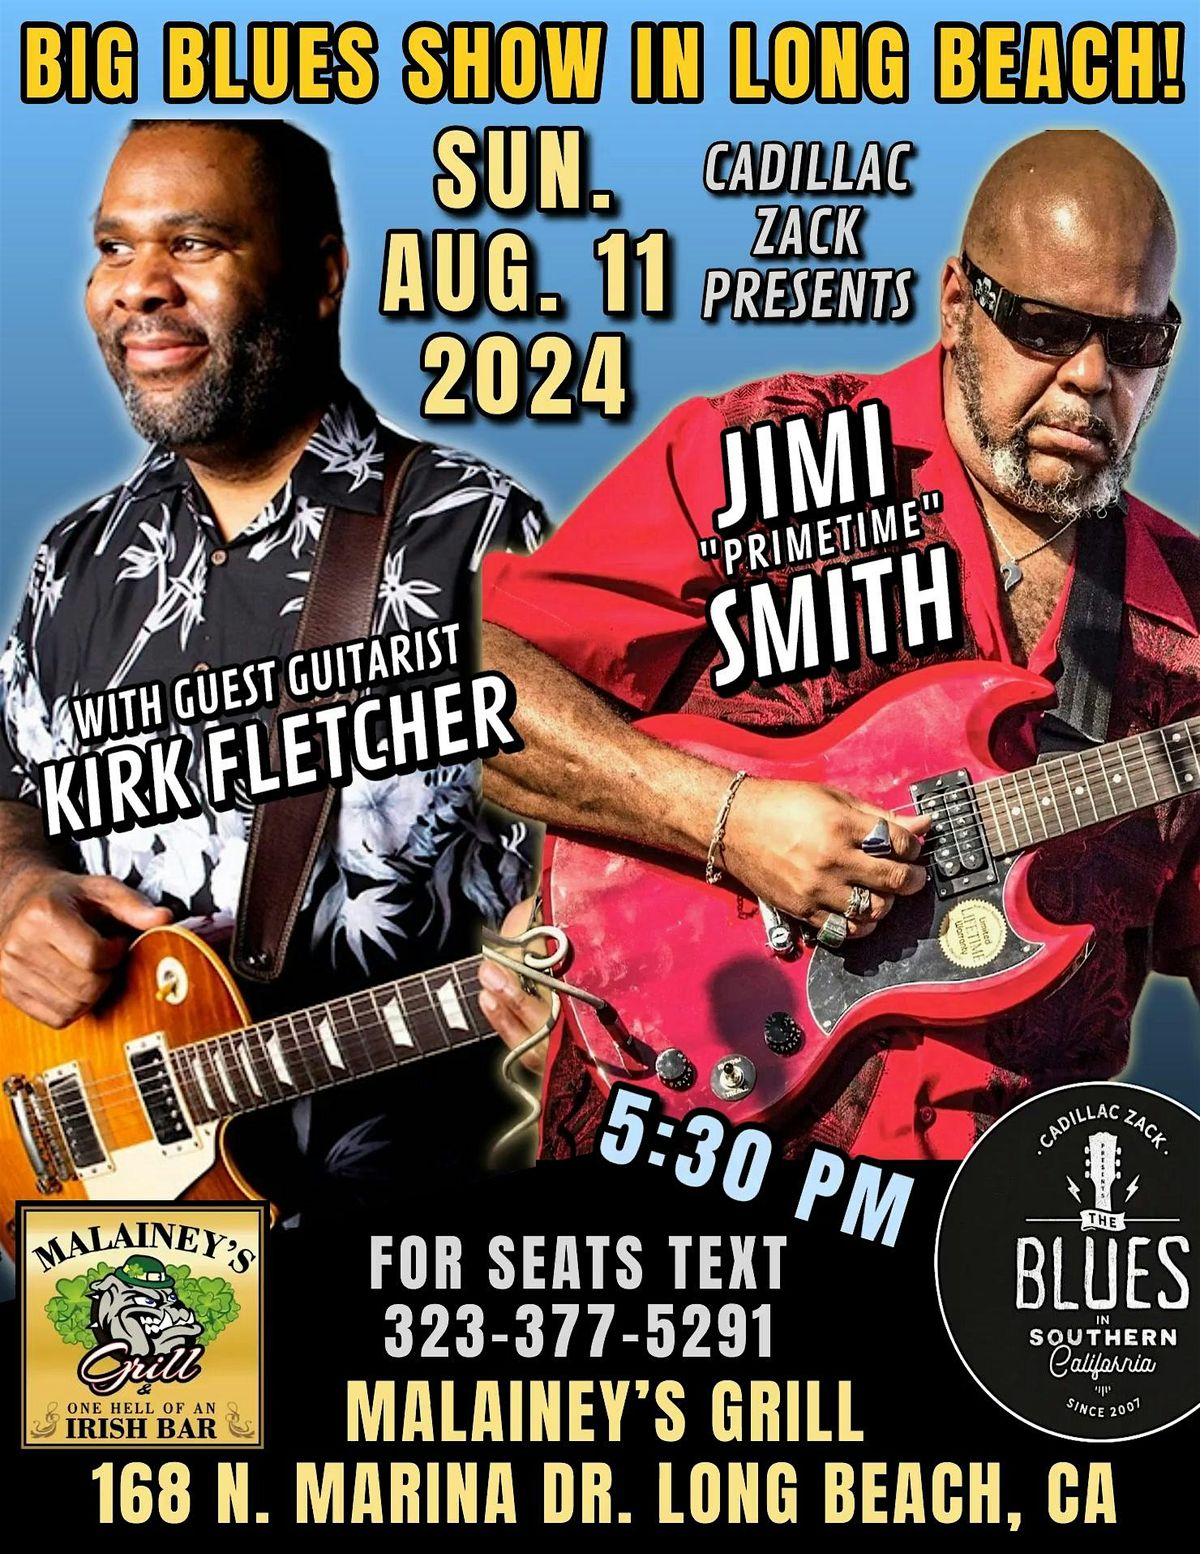 JIMI "PRIMETIME" SMITH & KIRK FLETCHER - Blues Greats - in Long Beach!